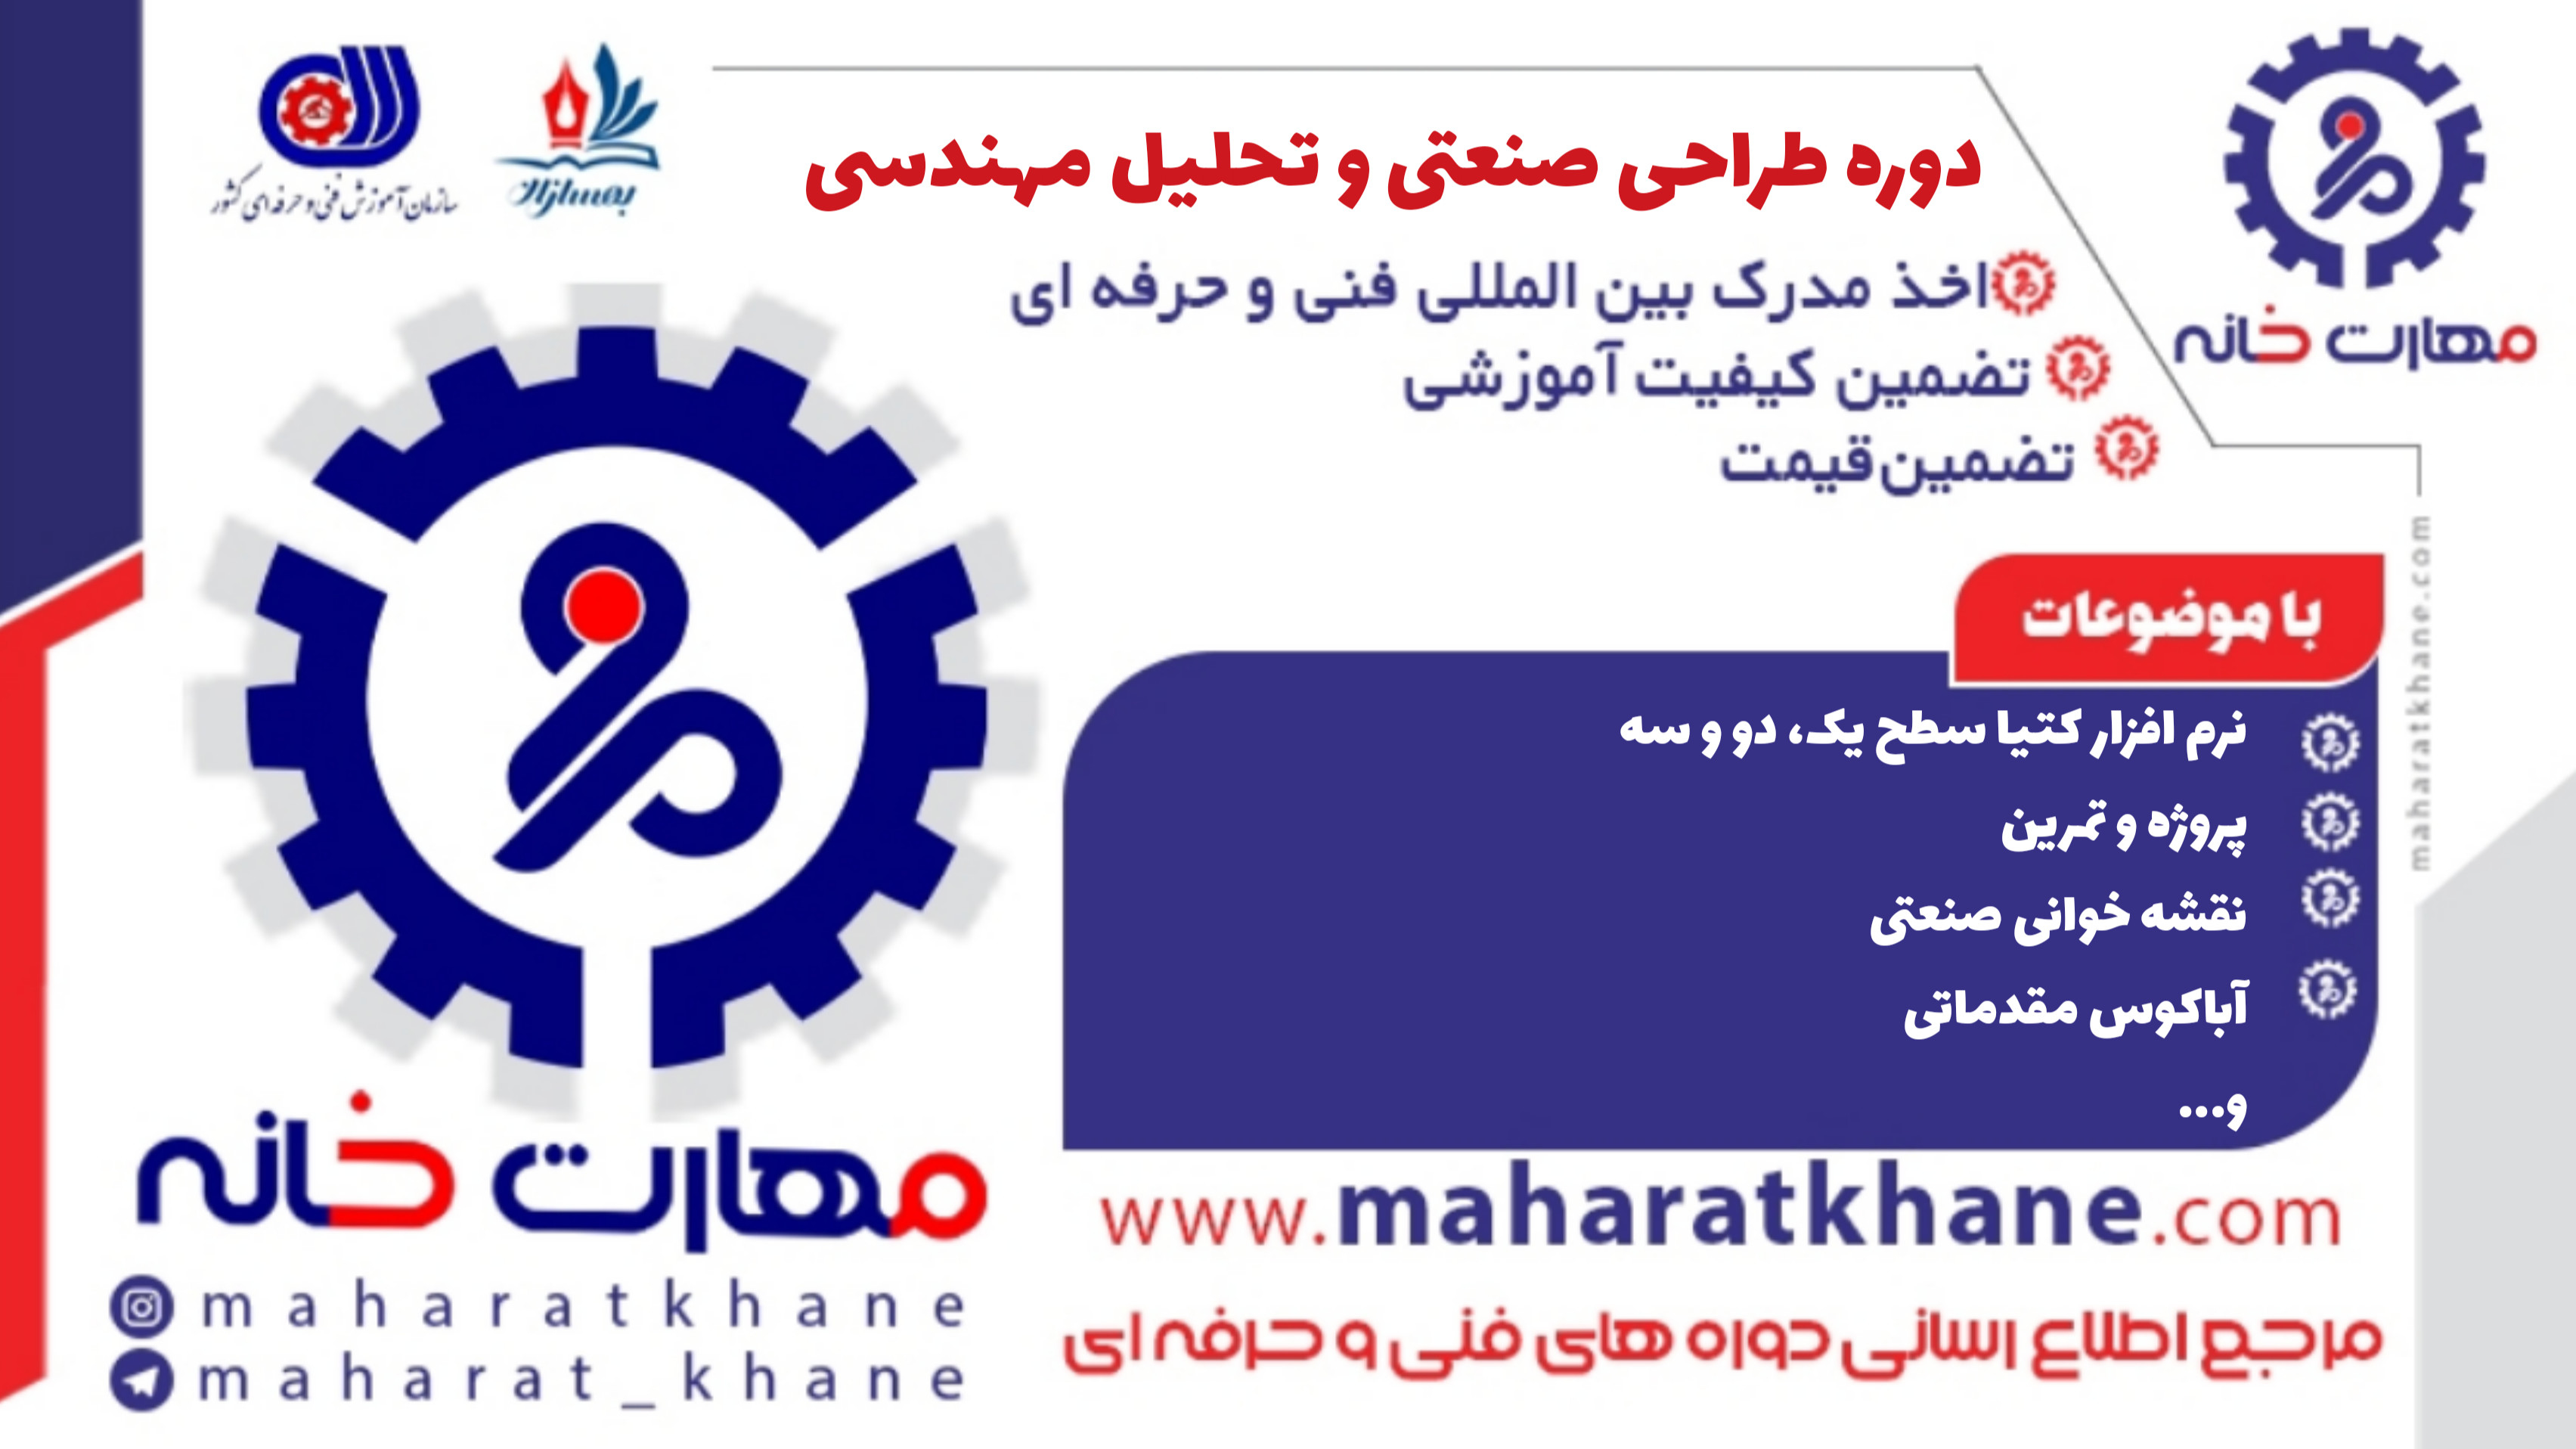 آموزش دوره طراحی صنعتی و مهندسی در اصفهان با مدرک